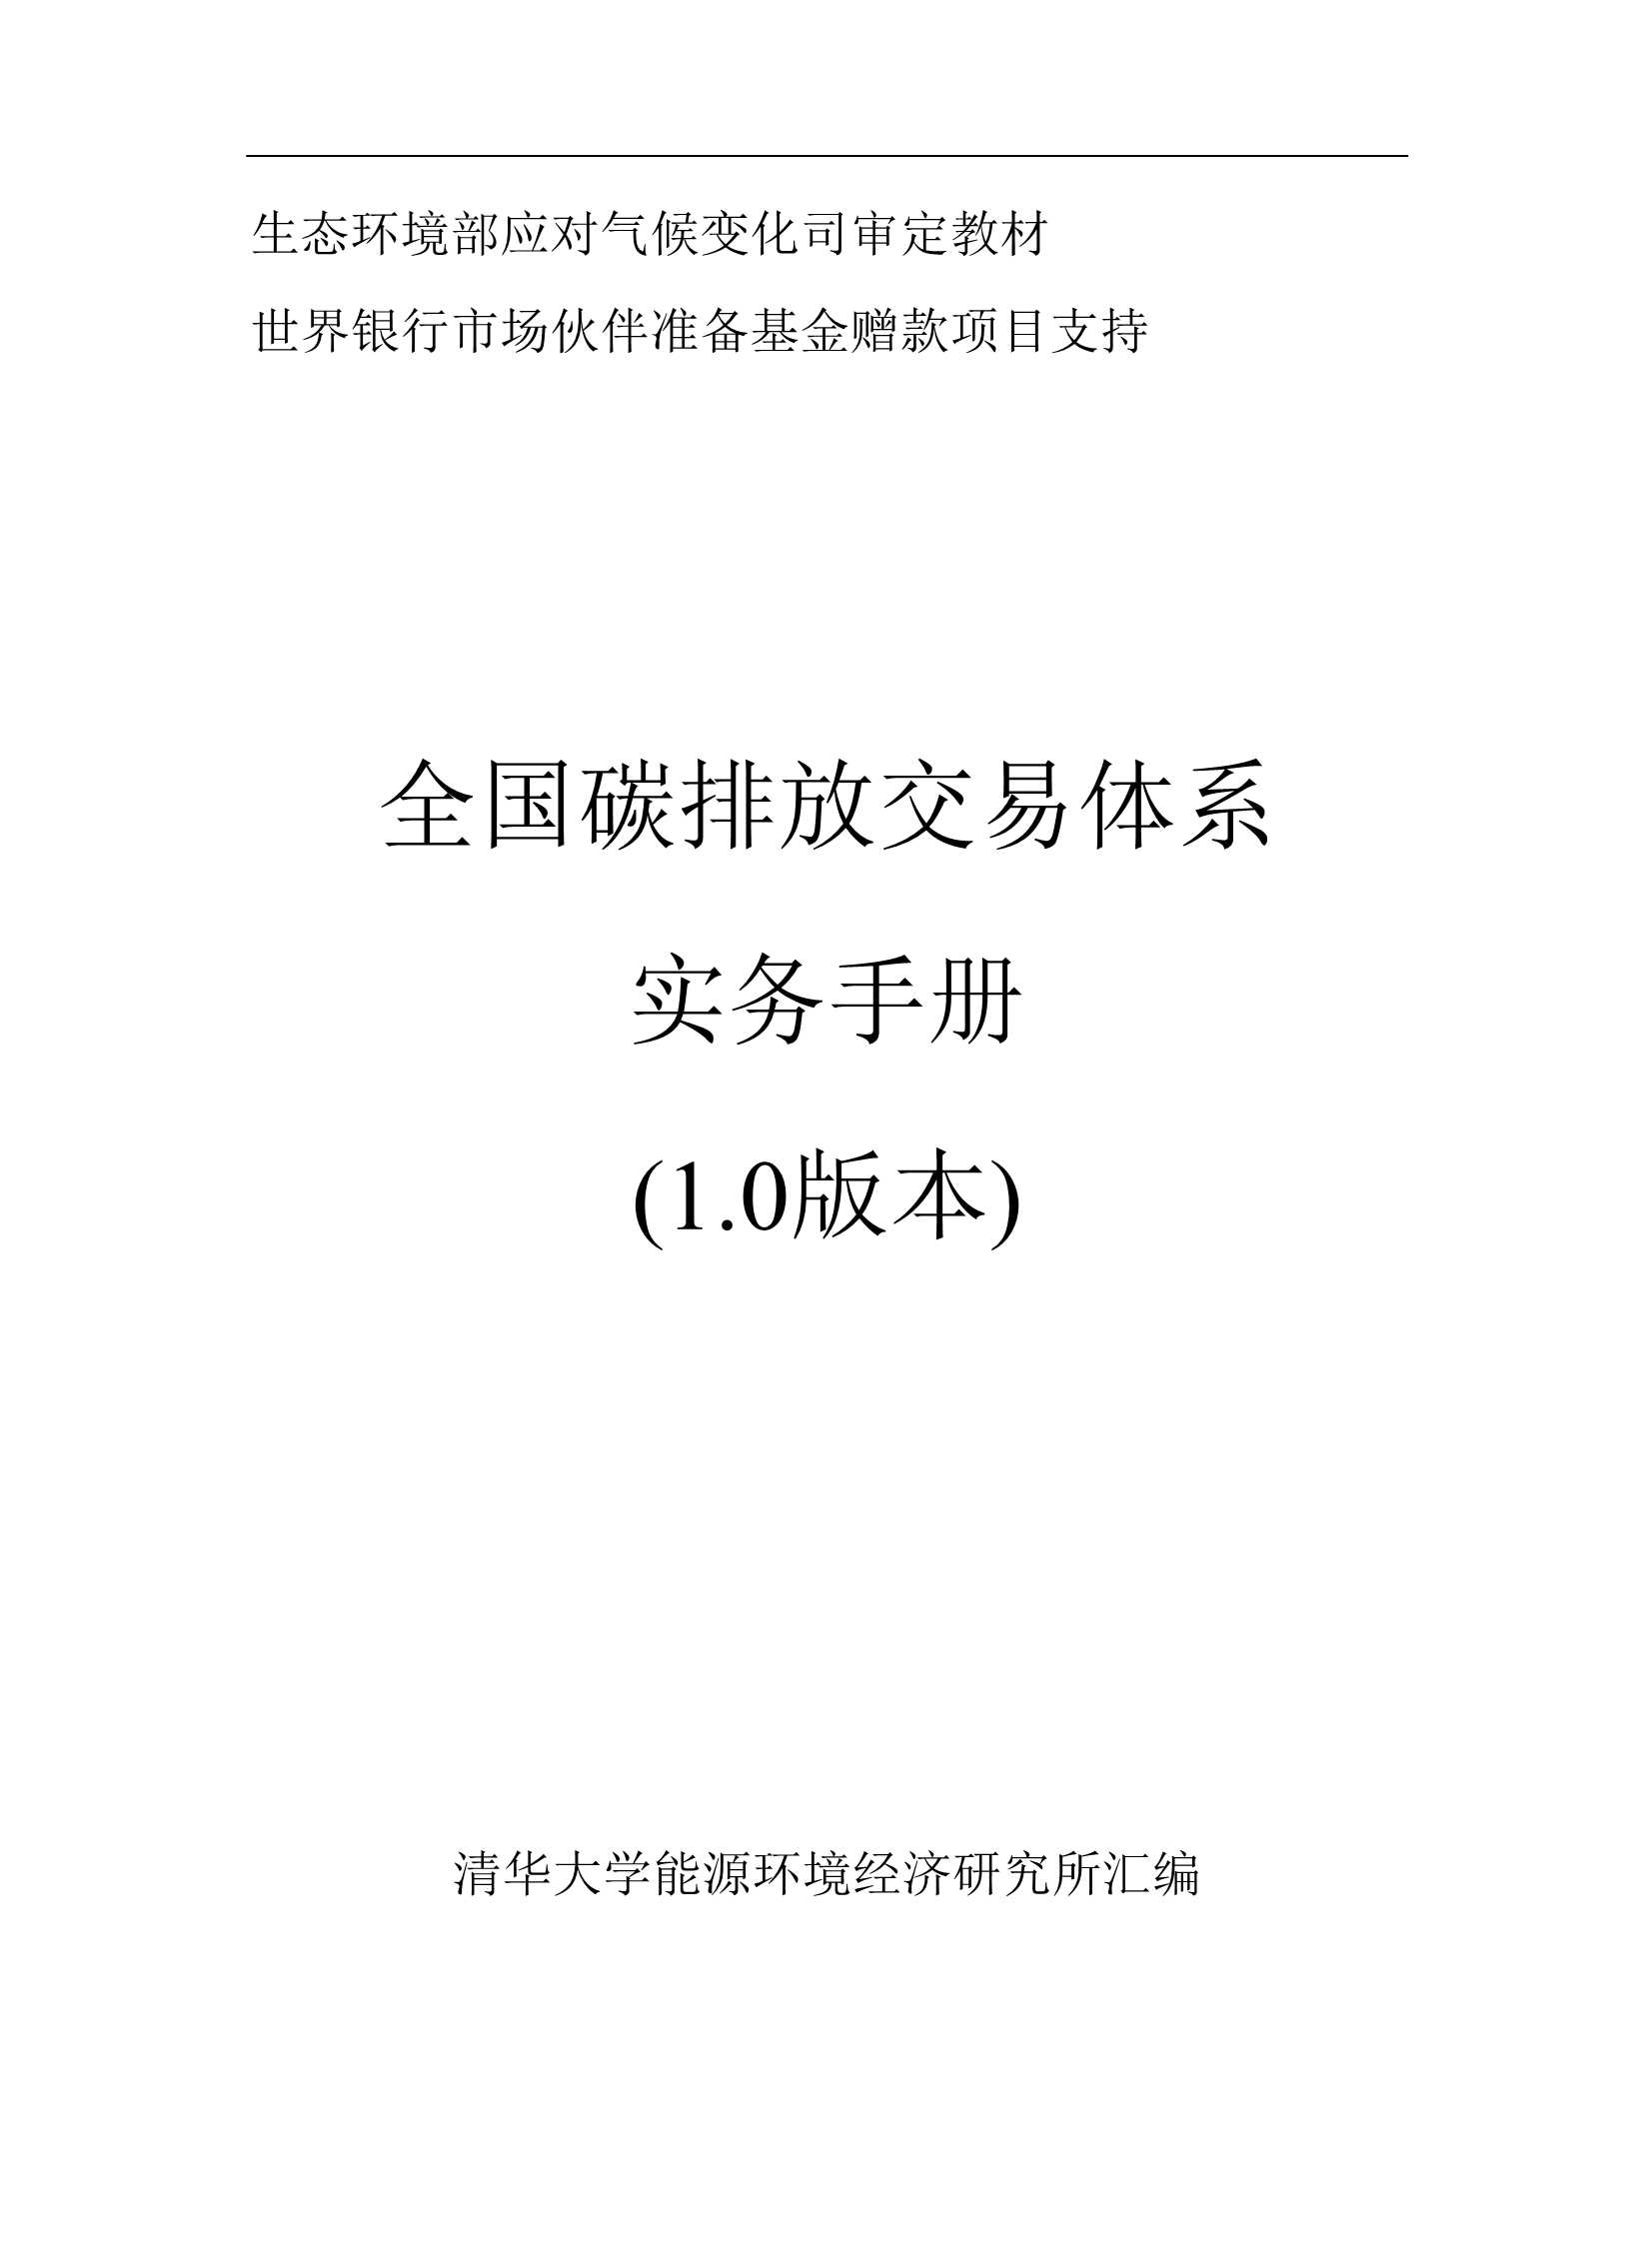 清华大学-全国碳排放交易体系实务手册（1.0版本）-2021.08-114页